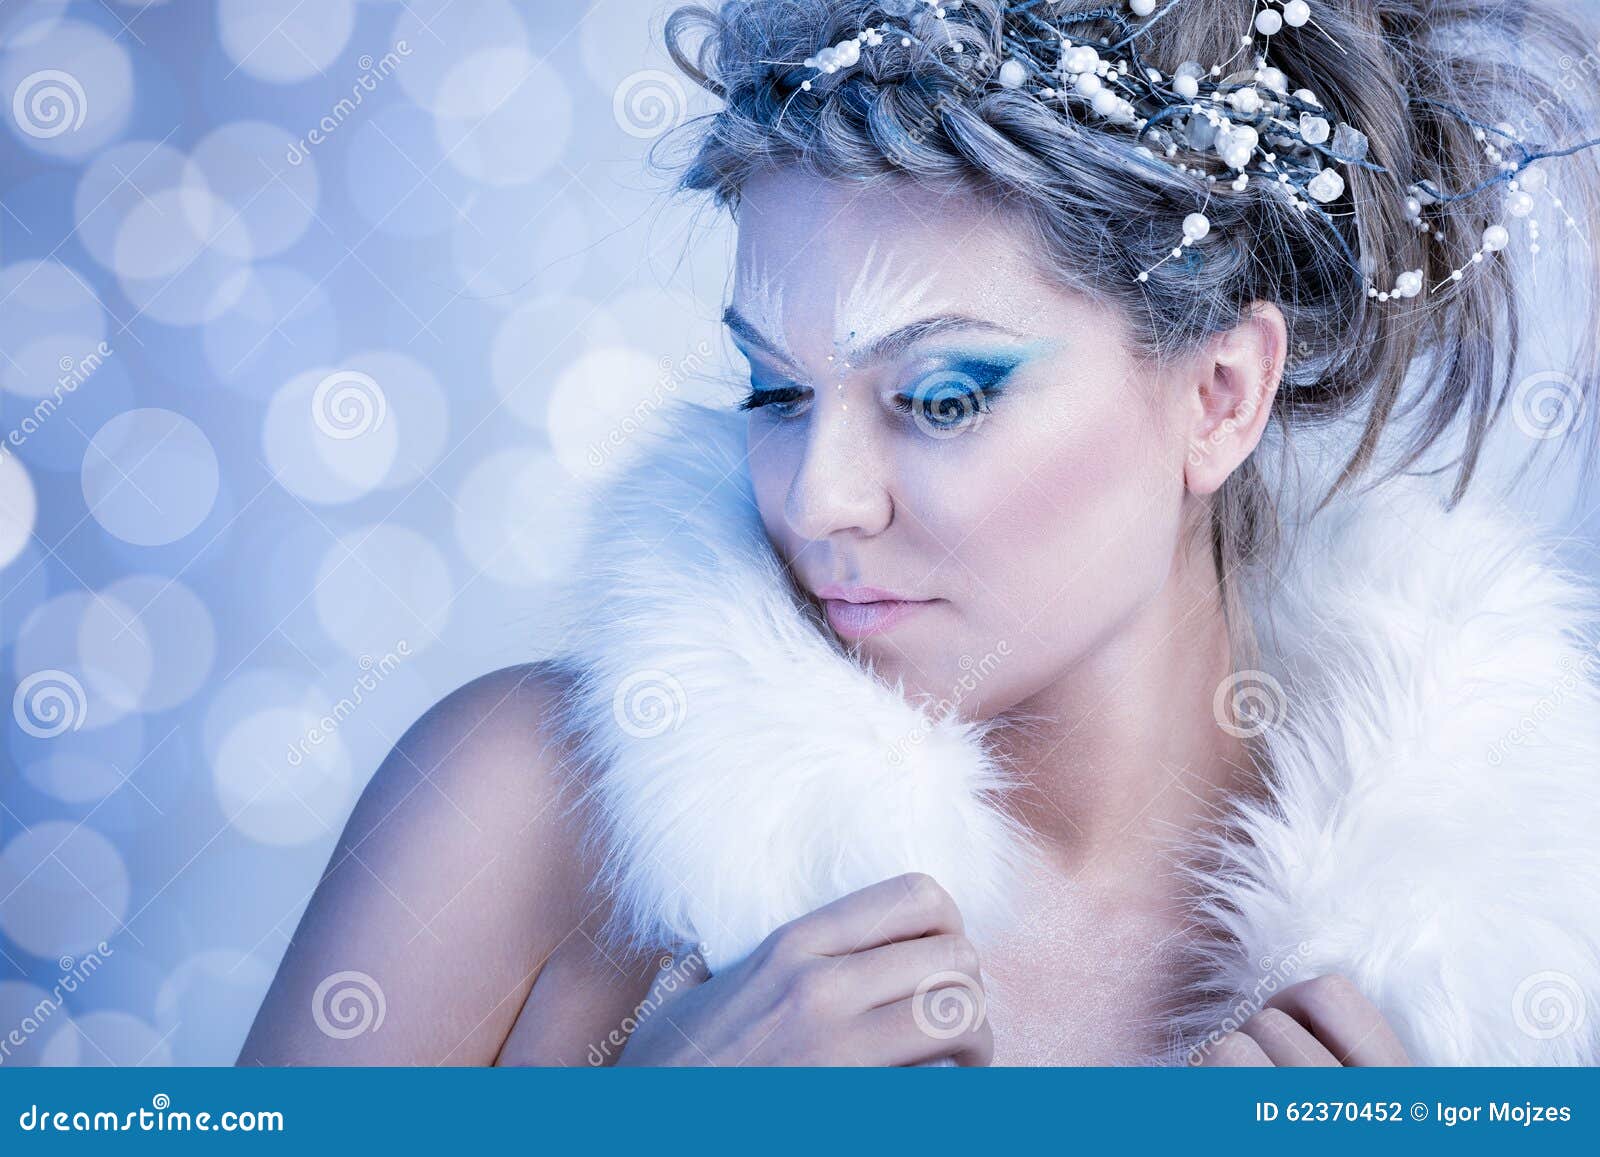 snow-queen-fur-over-winter-background-62370452.jpg